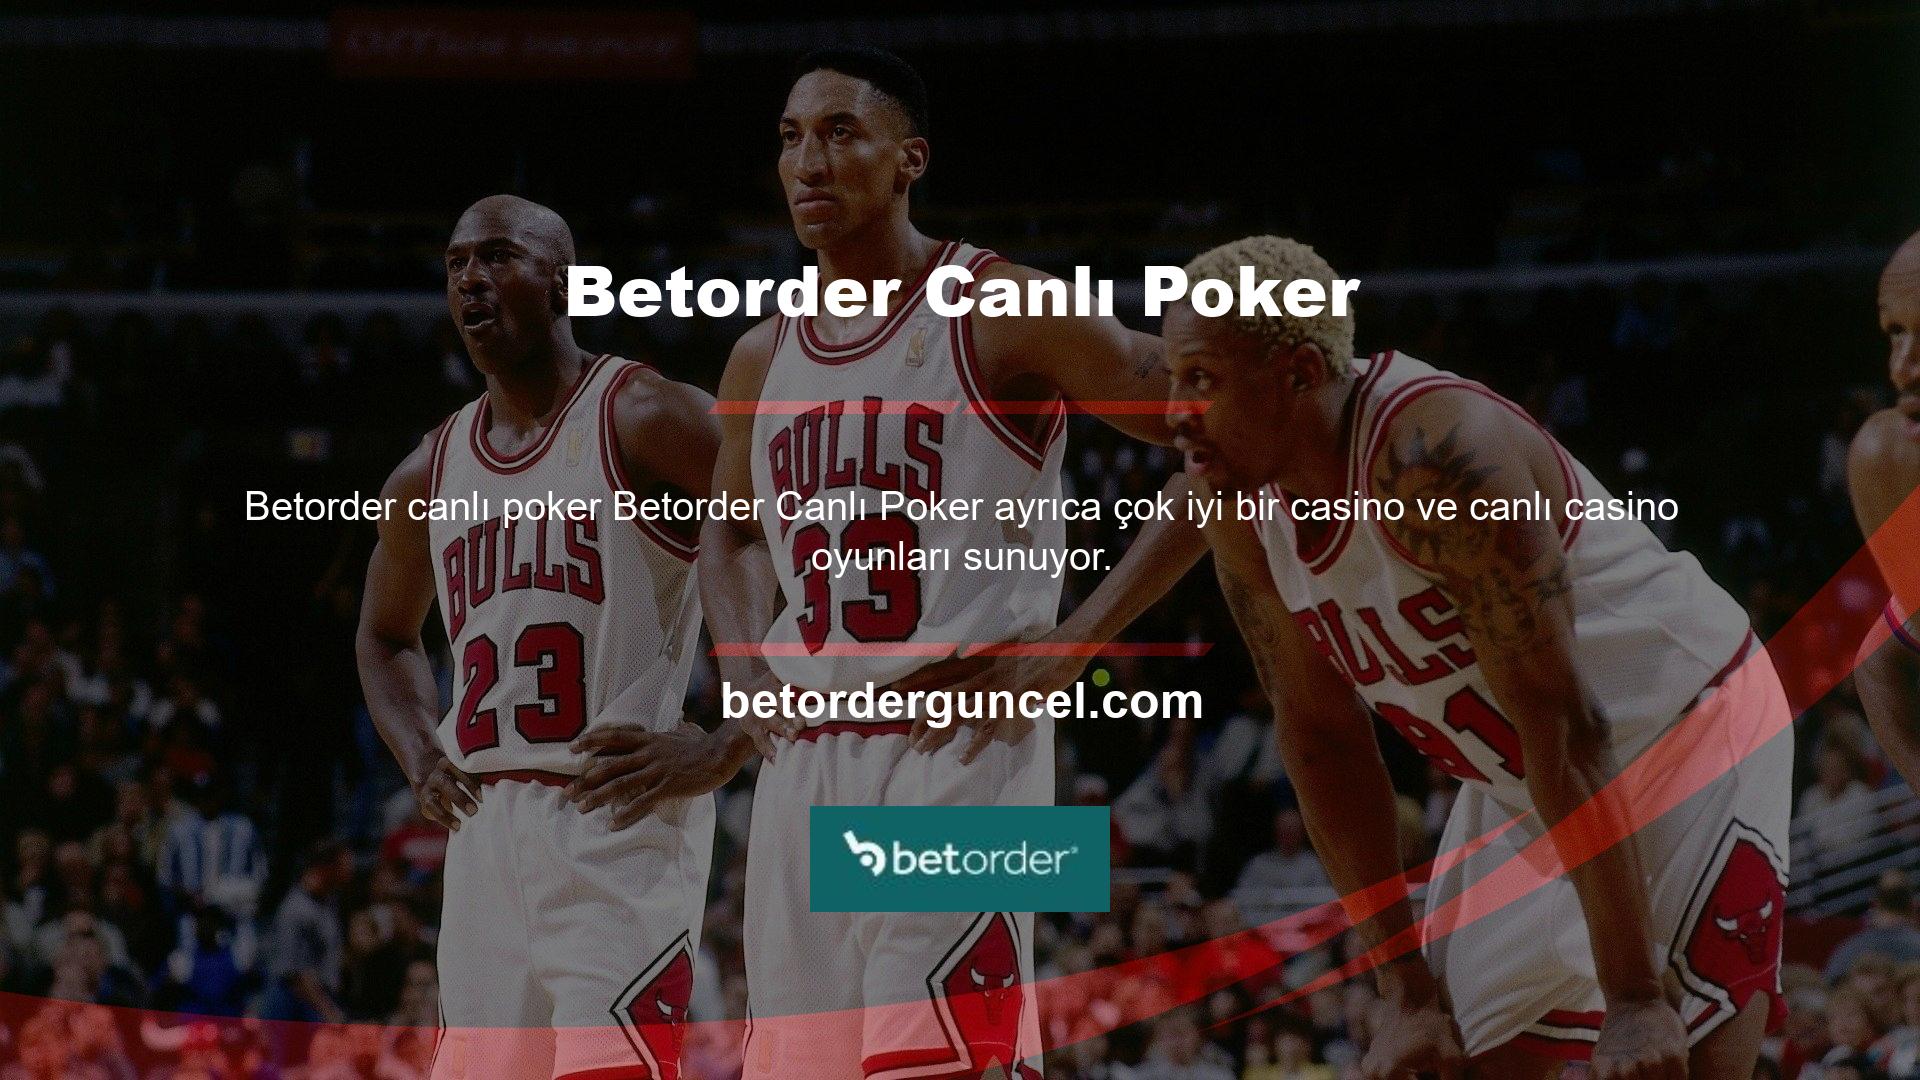 Betorder Türk şirketi Poker, Canlı Bingo, Avea, Hilo, Zeppelin ve daha fazlası gibi her türlü yeni ve popüler slot oyunlarını üyeleriyle paylaşıyor